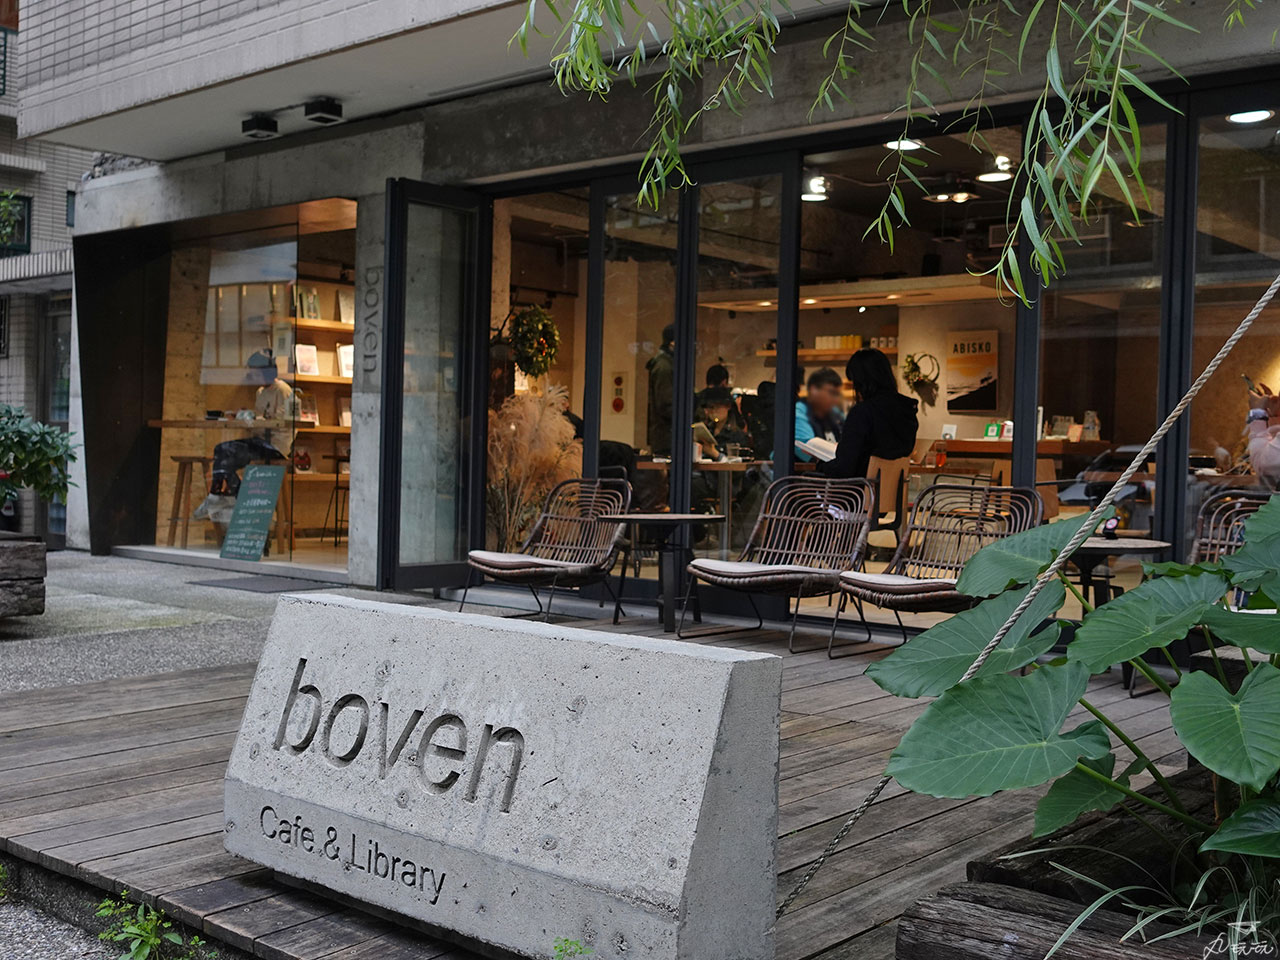 Boven Cafe